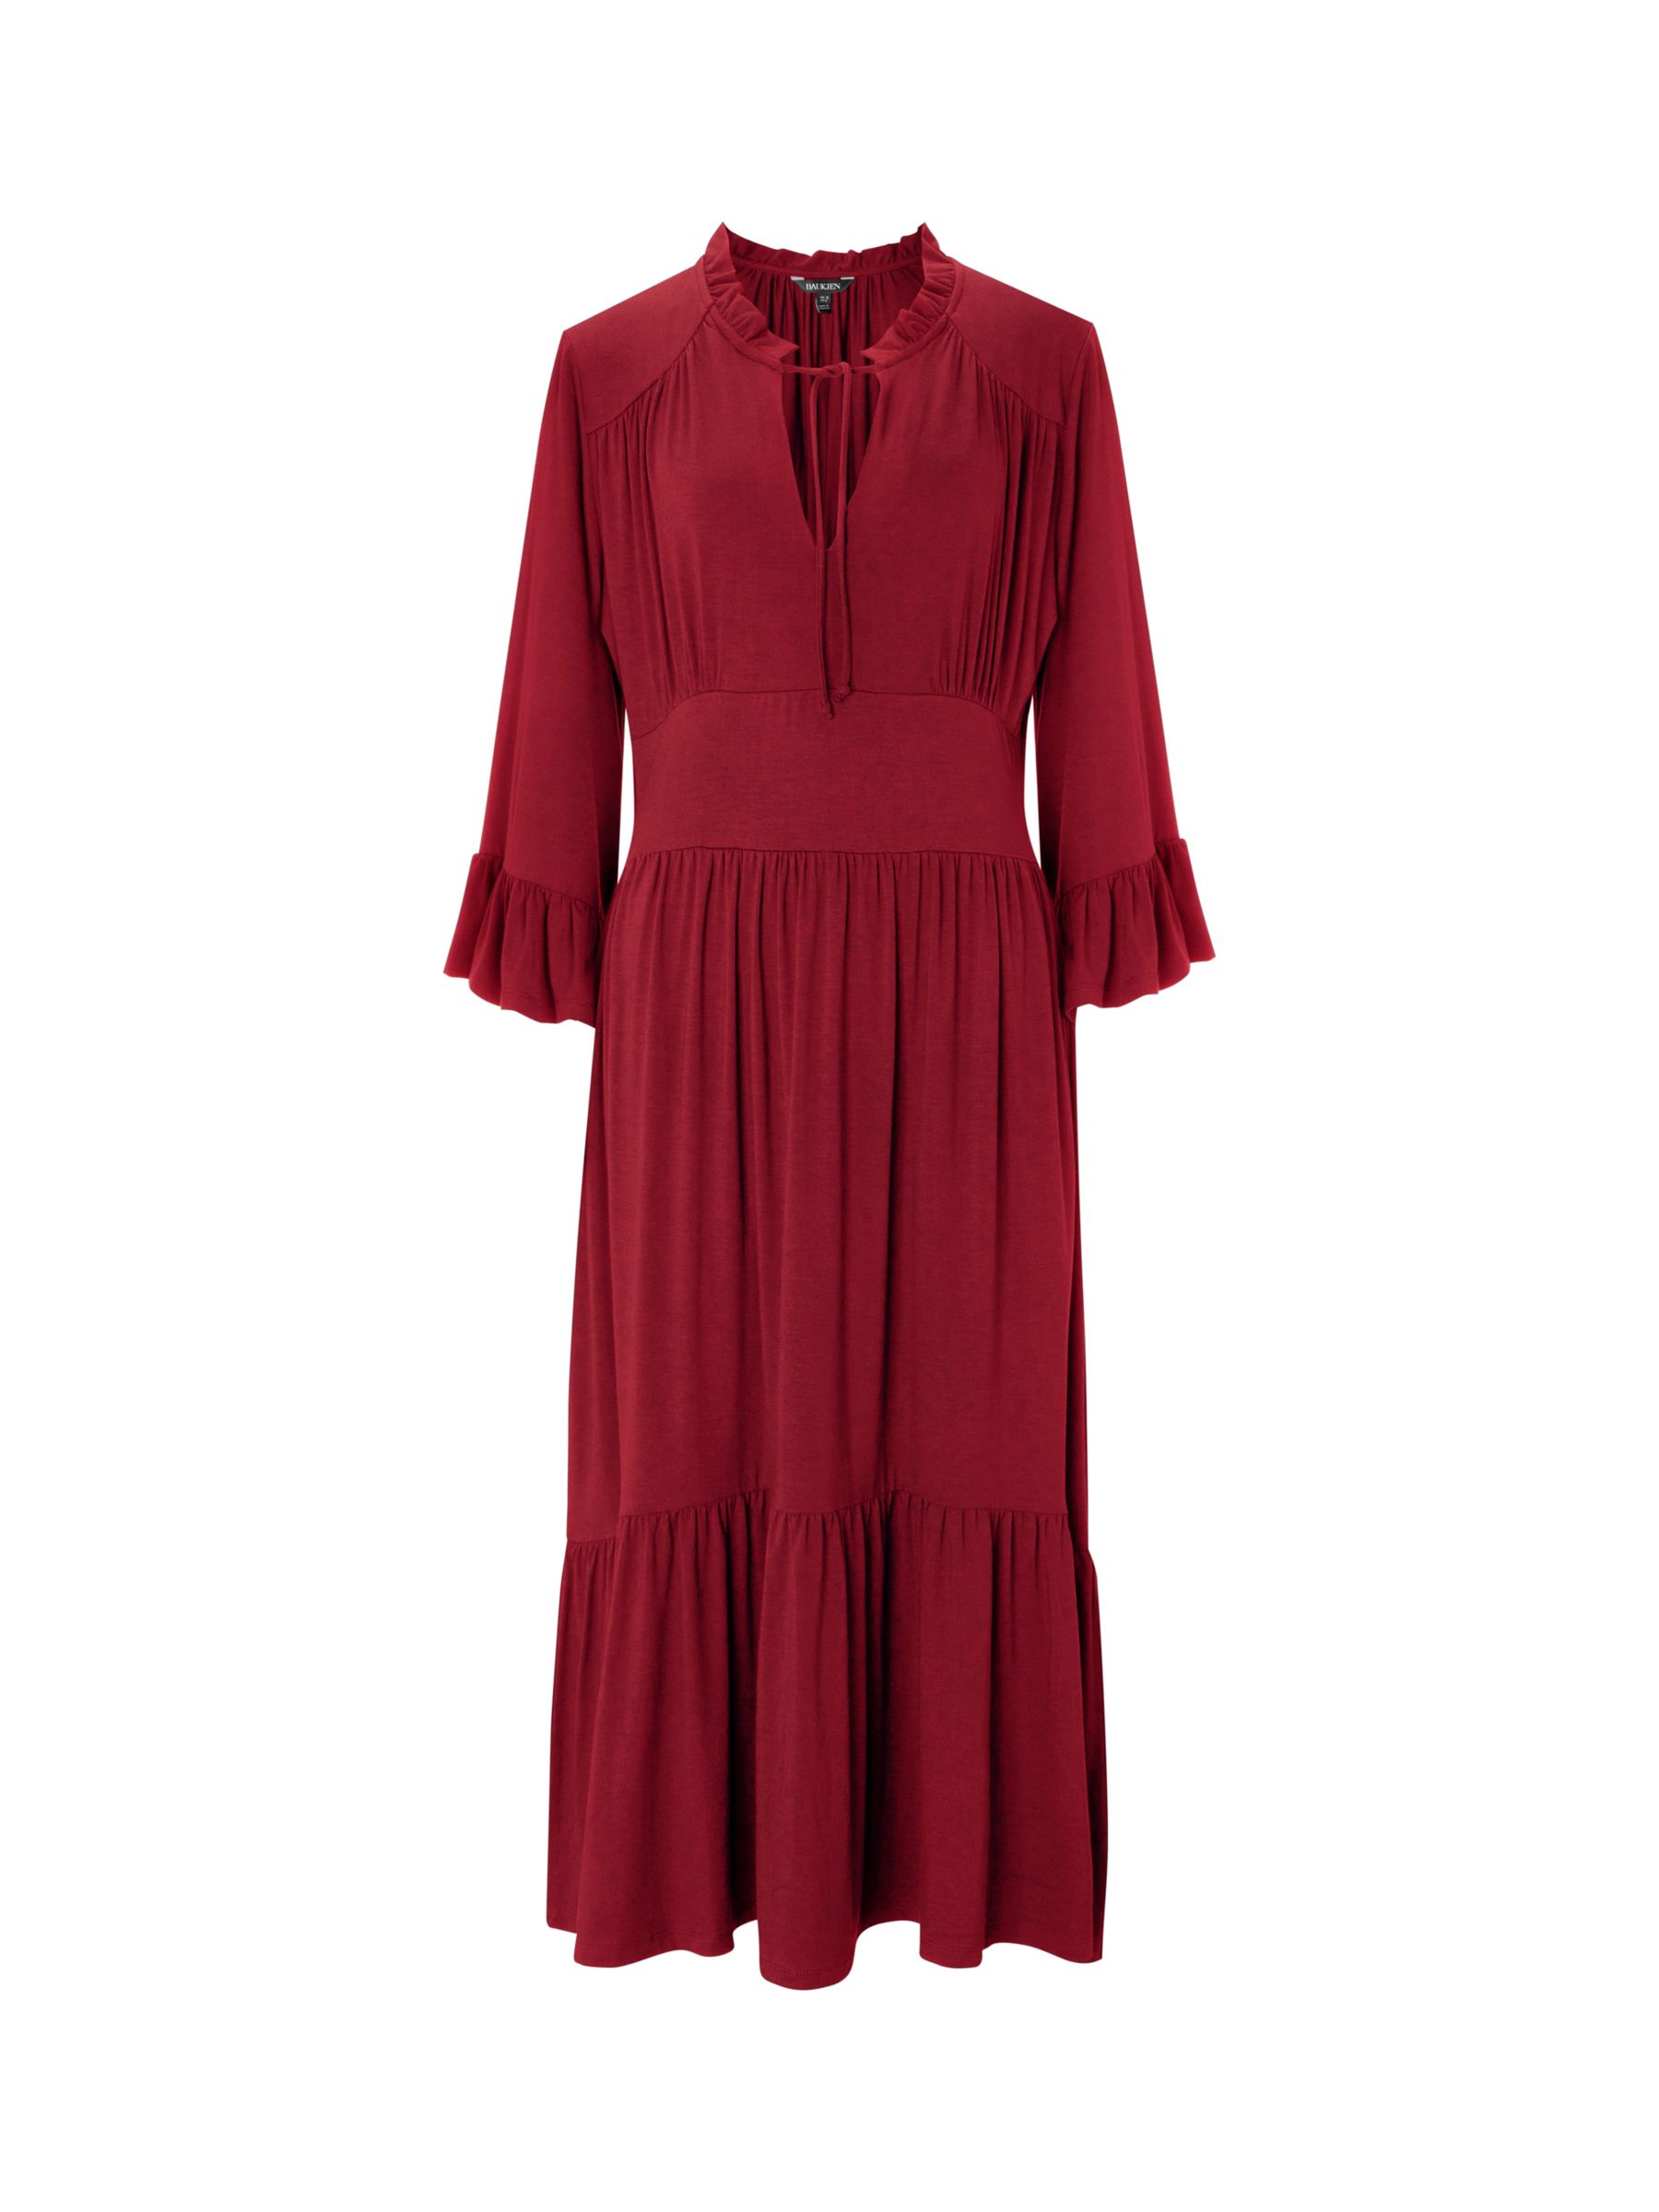 Baukjen Elsie Tiered Midi Dress, Red at John Lewis & Partners